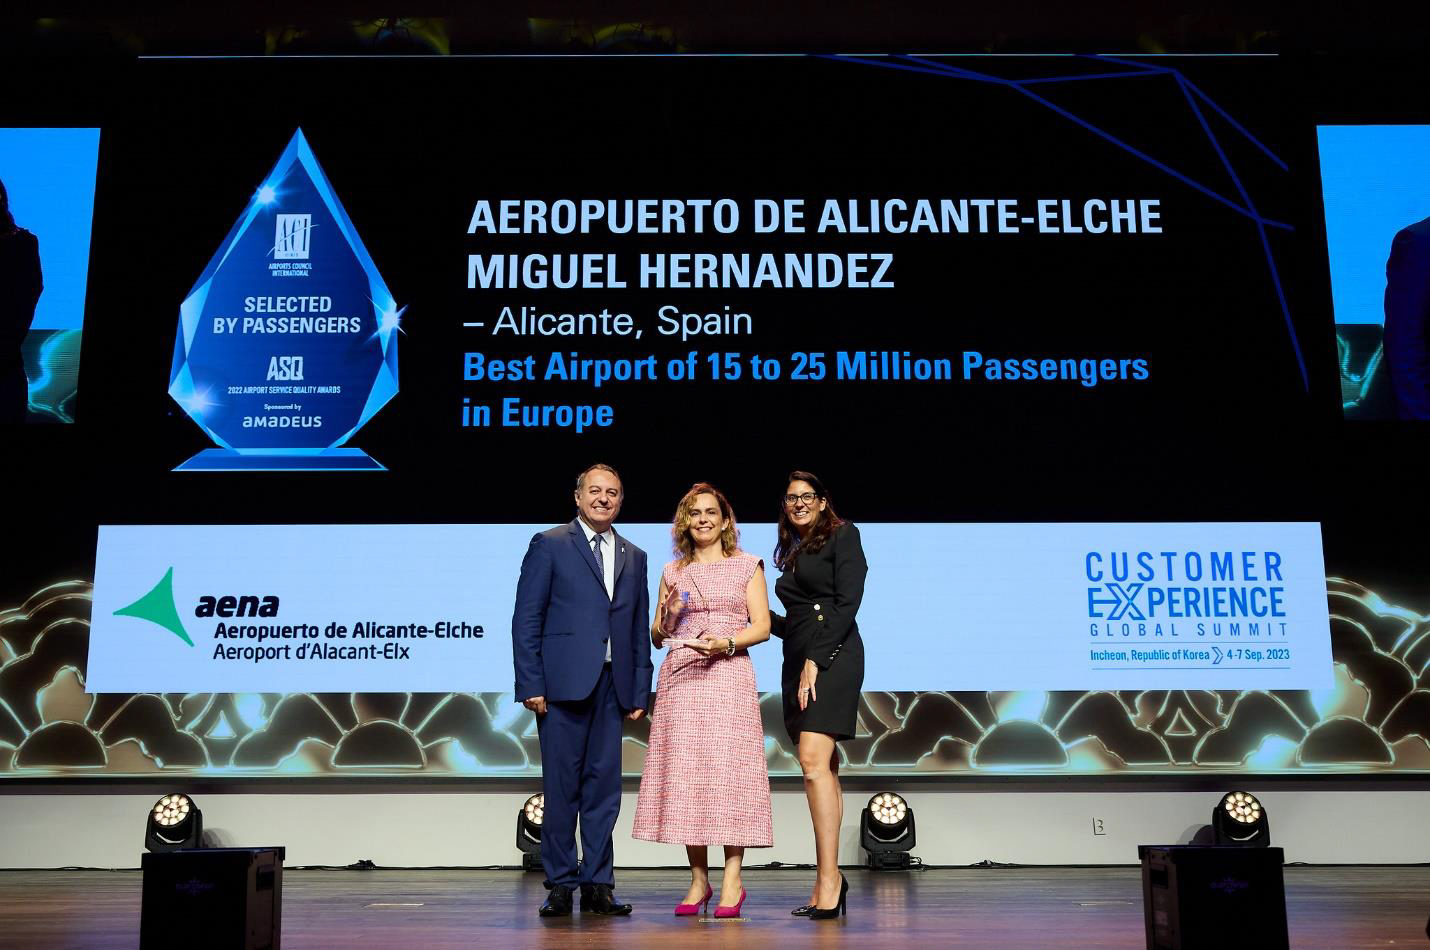 La directora del Aeropuerto de Alicante-Elche Miguel Hernndez recoge el premio a Mejor Aeropuerto de Europa otorgado por el Consejo Internacional de Aeropuerto (ACI) el 6 de septiembre en Incheon, Corea. FOTO: AENA.